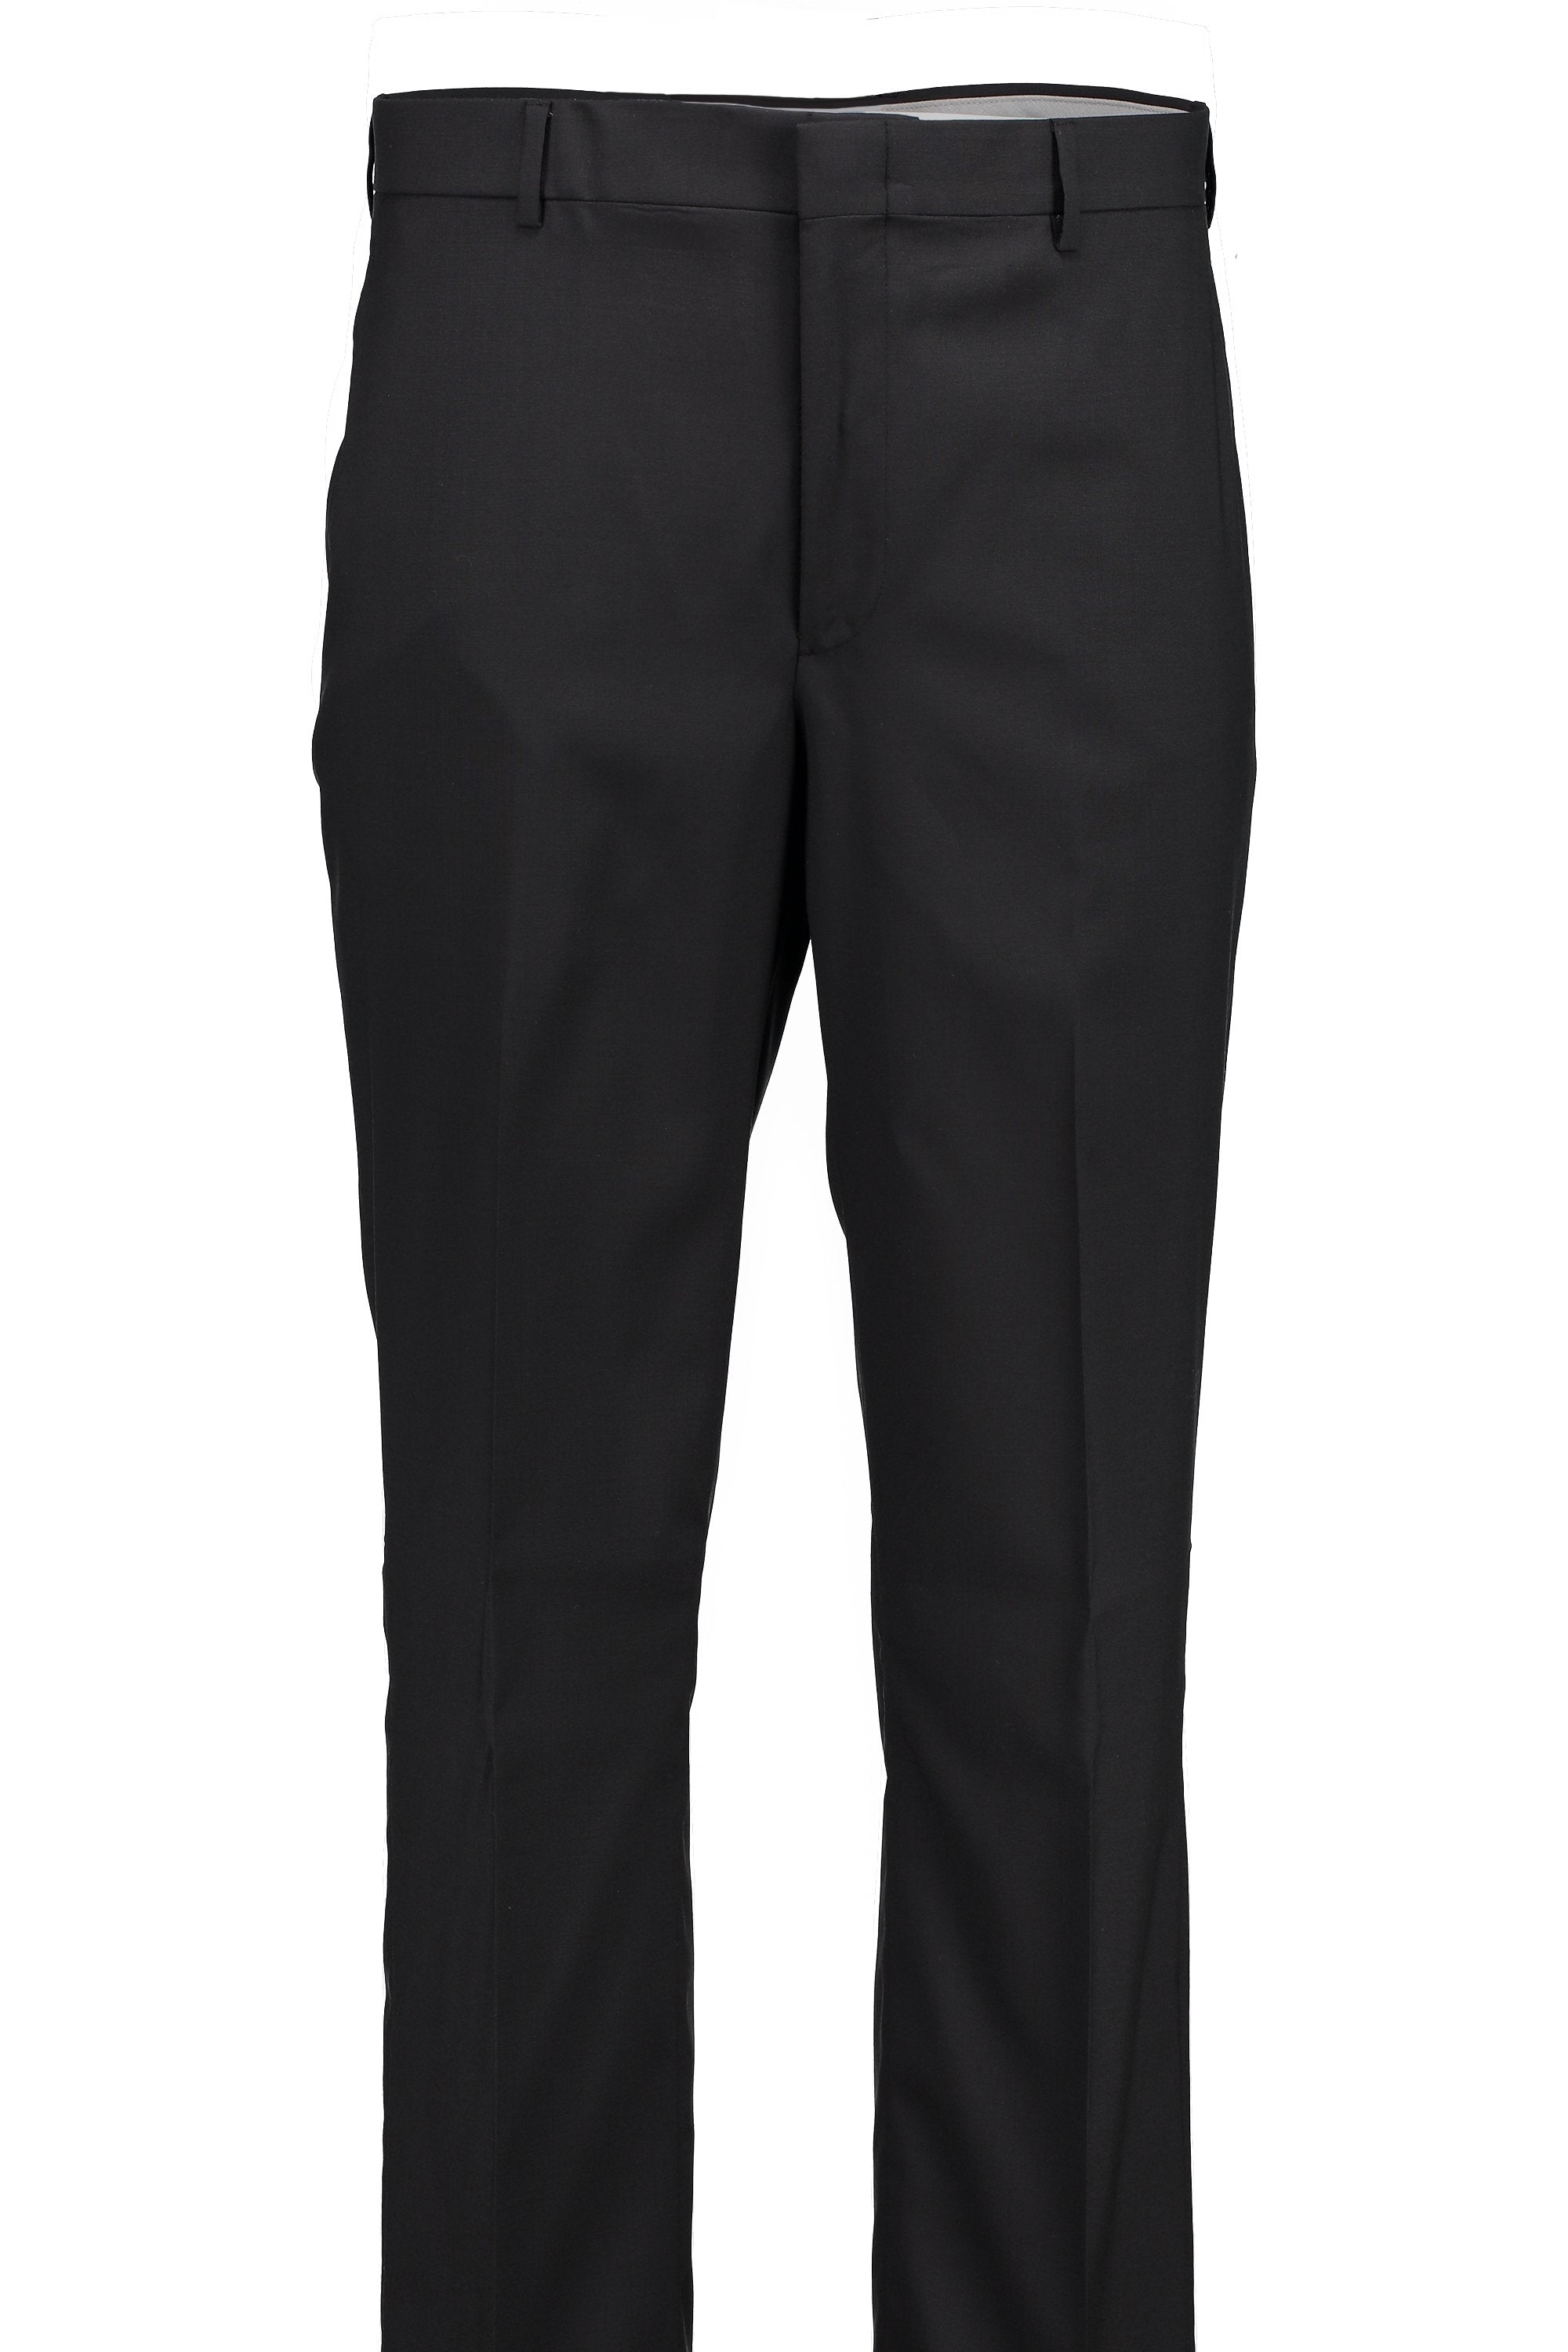 Men's Suit Separates Flat Front Pant Classic Cut - BLACK 98/2 WOOL/LYCRA SUPER100